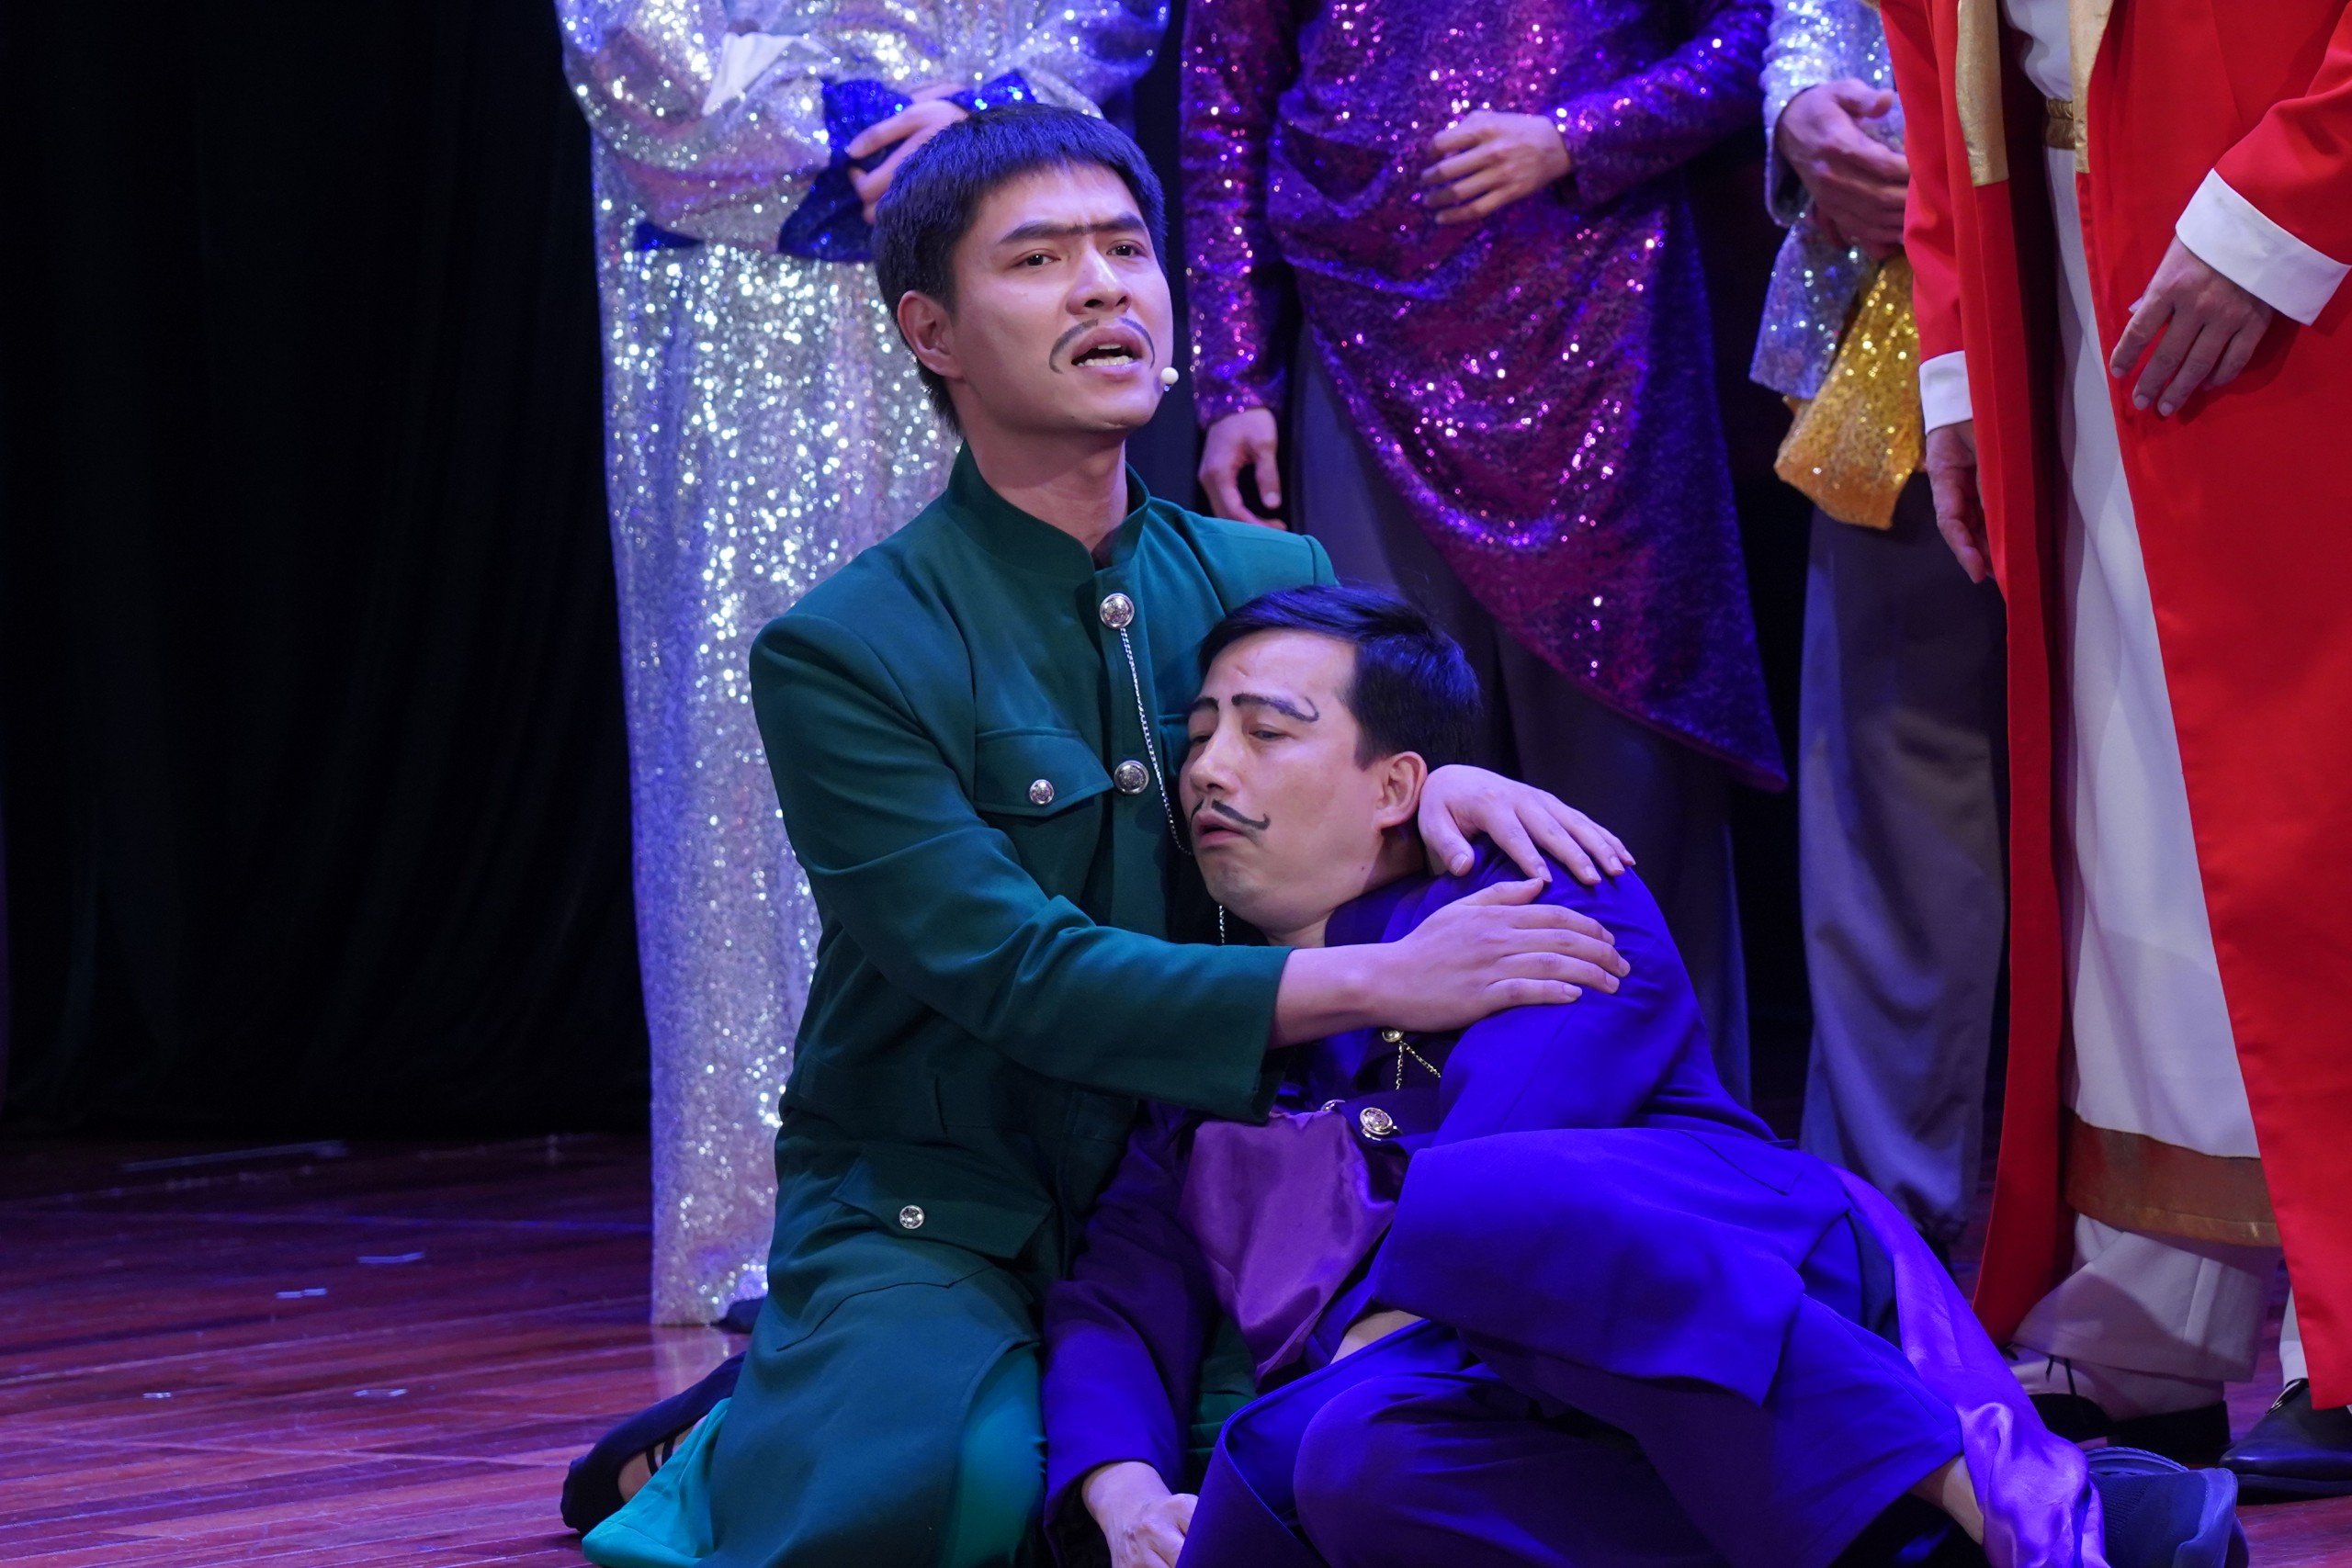 "Hoàng đế" Kiều Minh Hiếu nude trên sân khấu khiến khán giả nhí cười nắc nẻ- Ảnh 4.